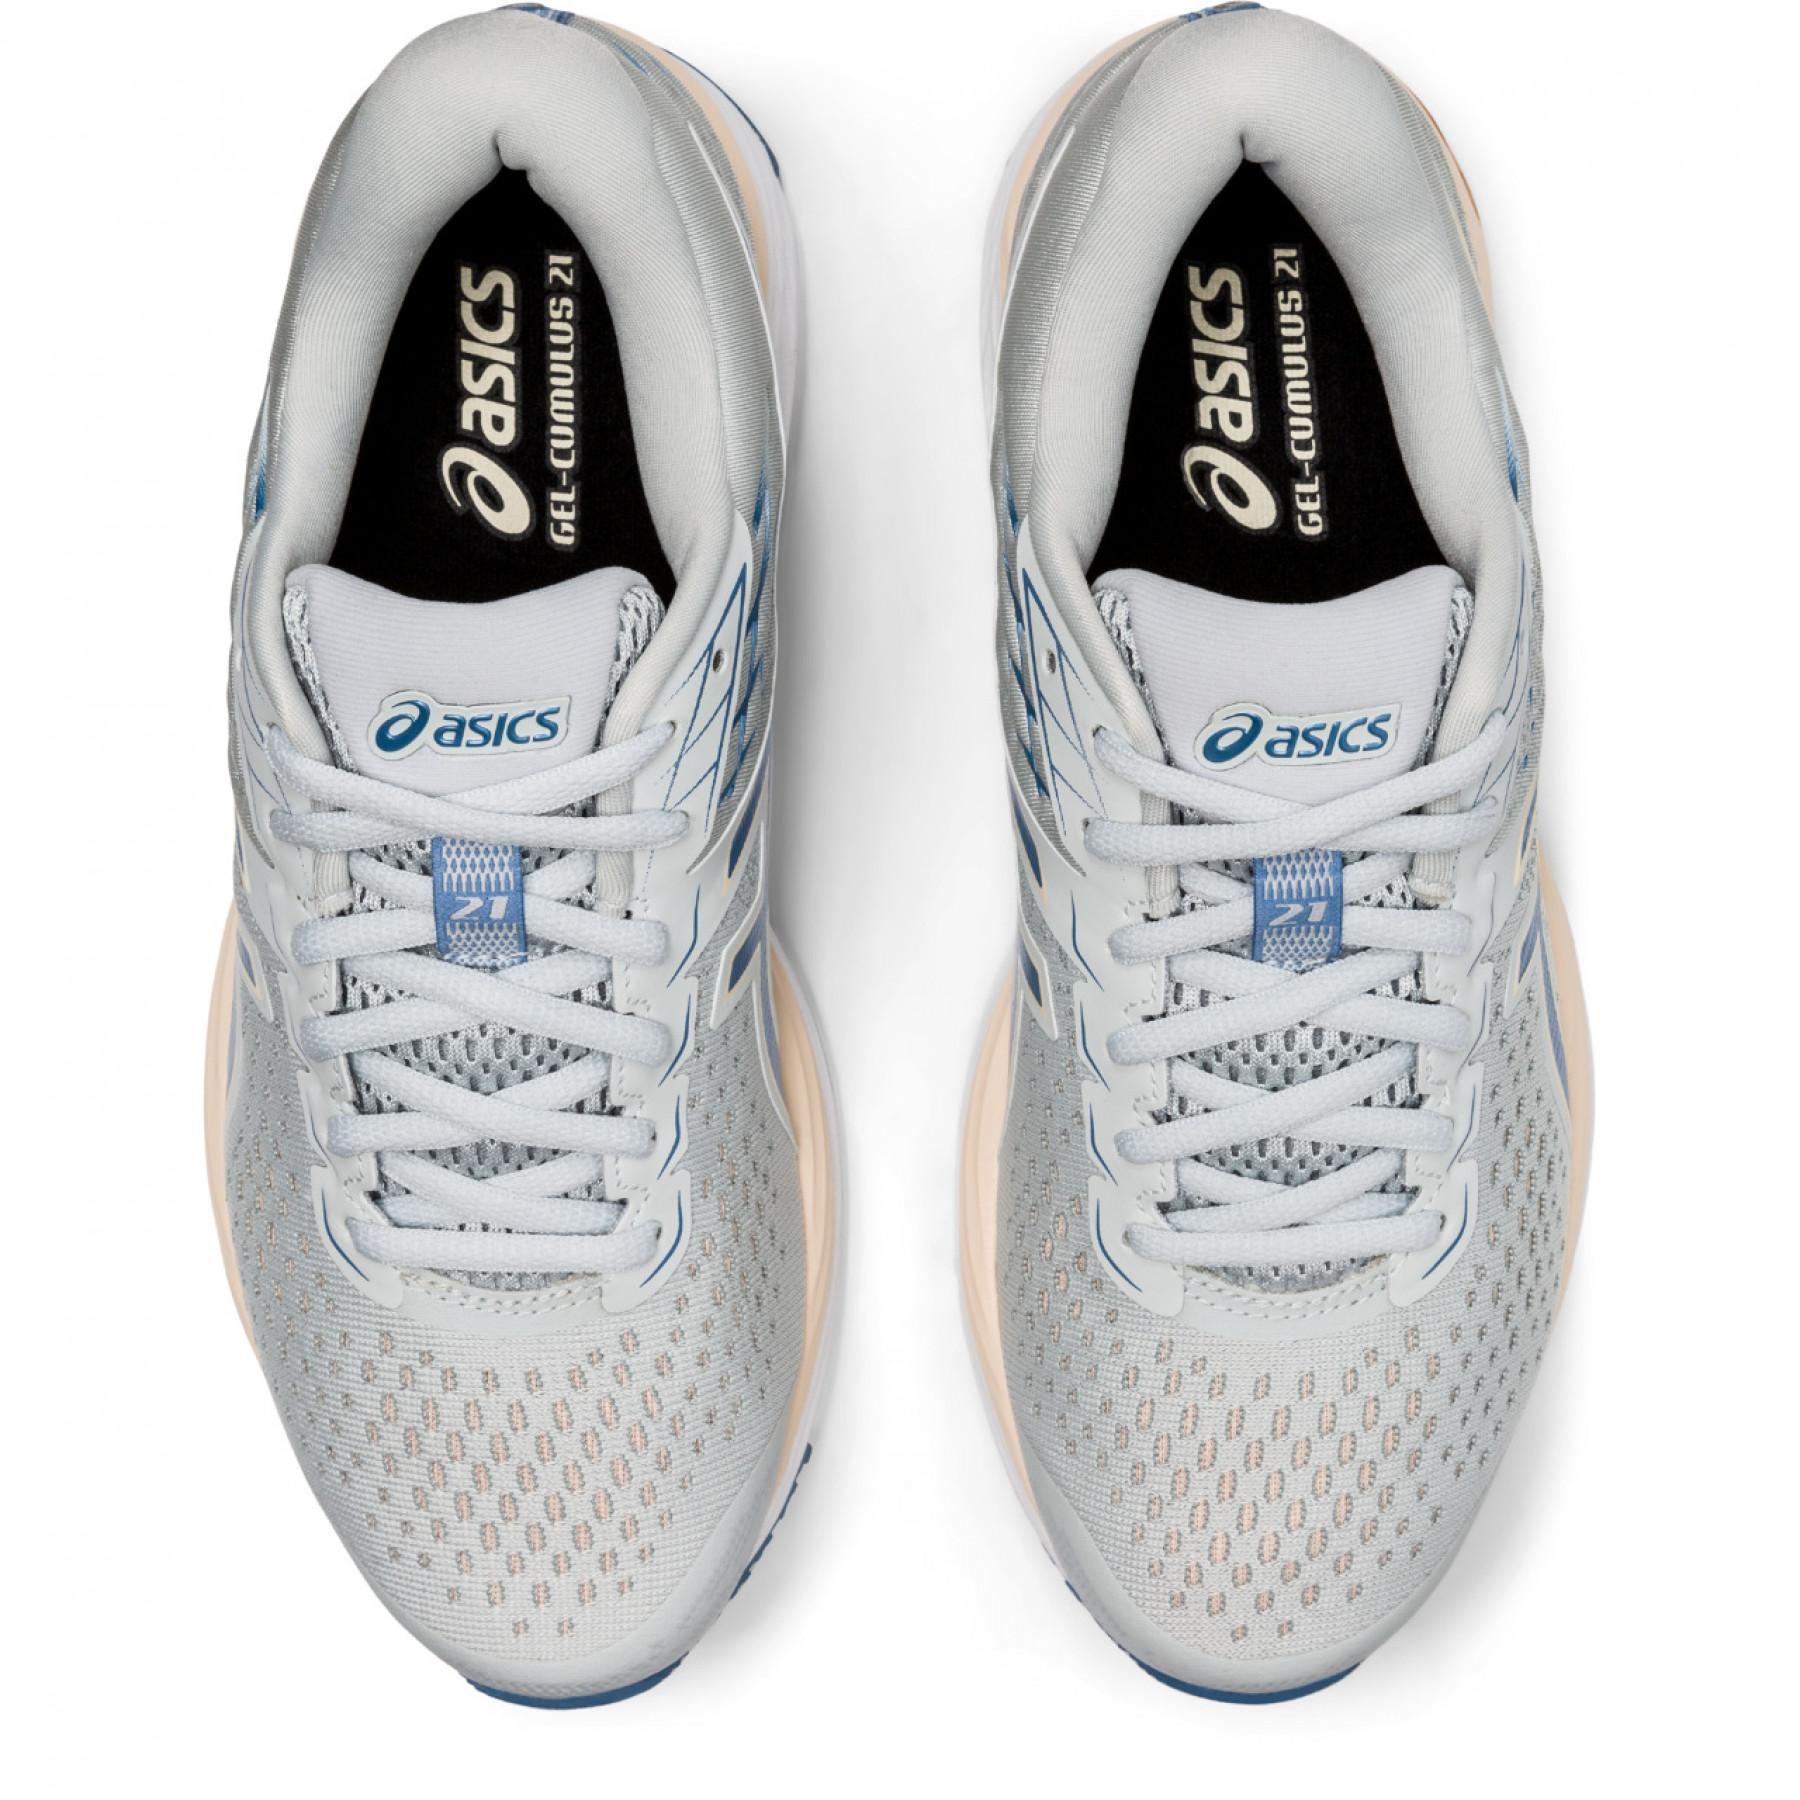 Chaussures de running femme Asics Gel-Cumulus 21